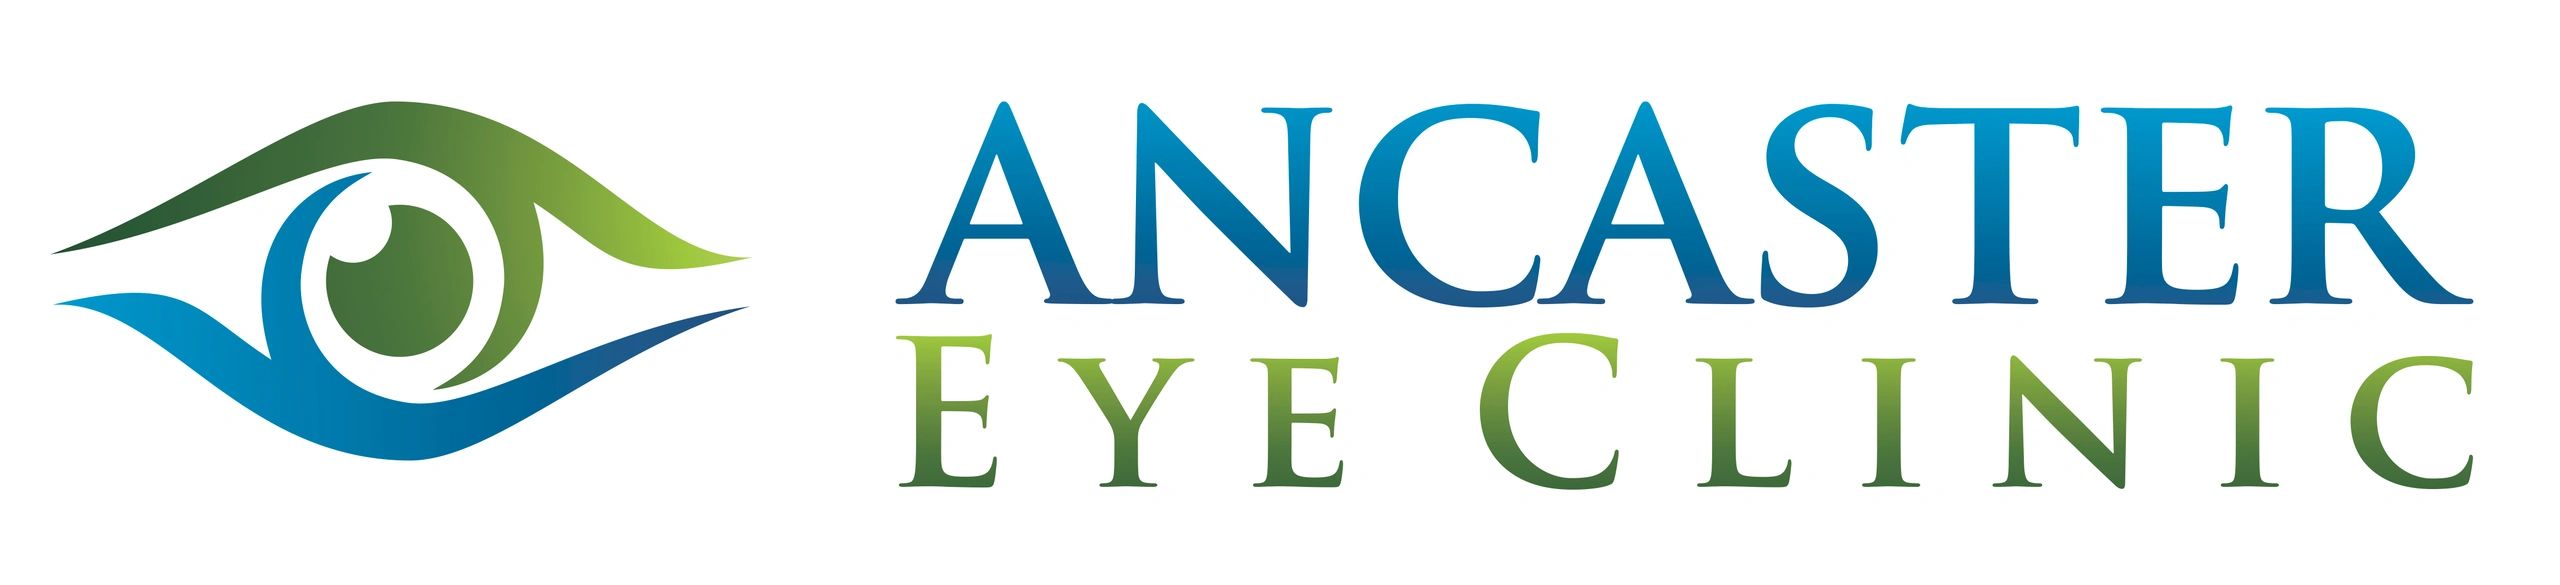 Ancaster Eye Clinic Left Logo 